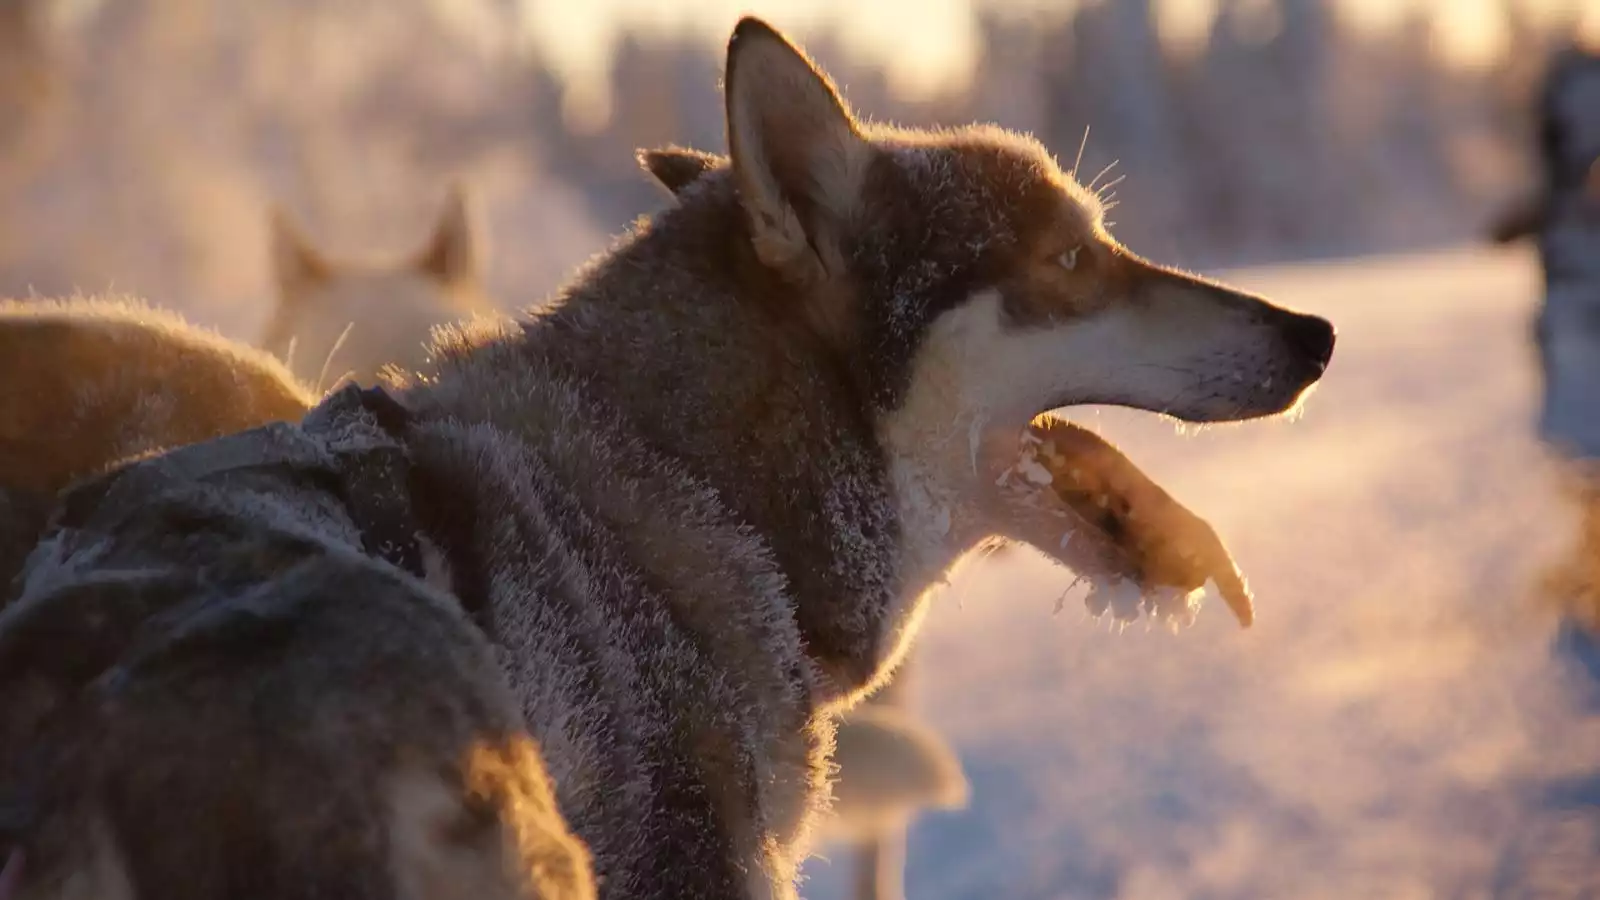 Welkom in Fins Lapland de husky's wachten al op je!